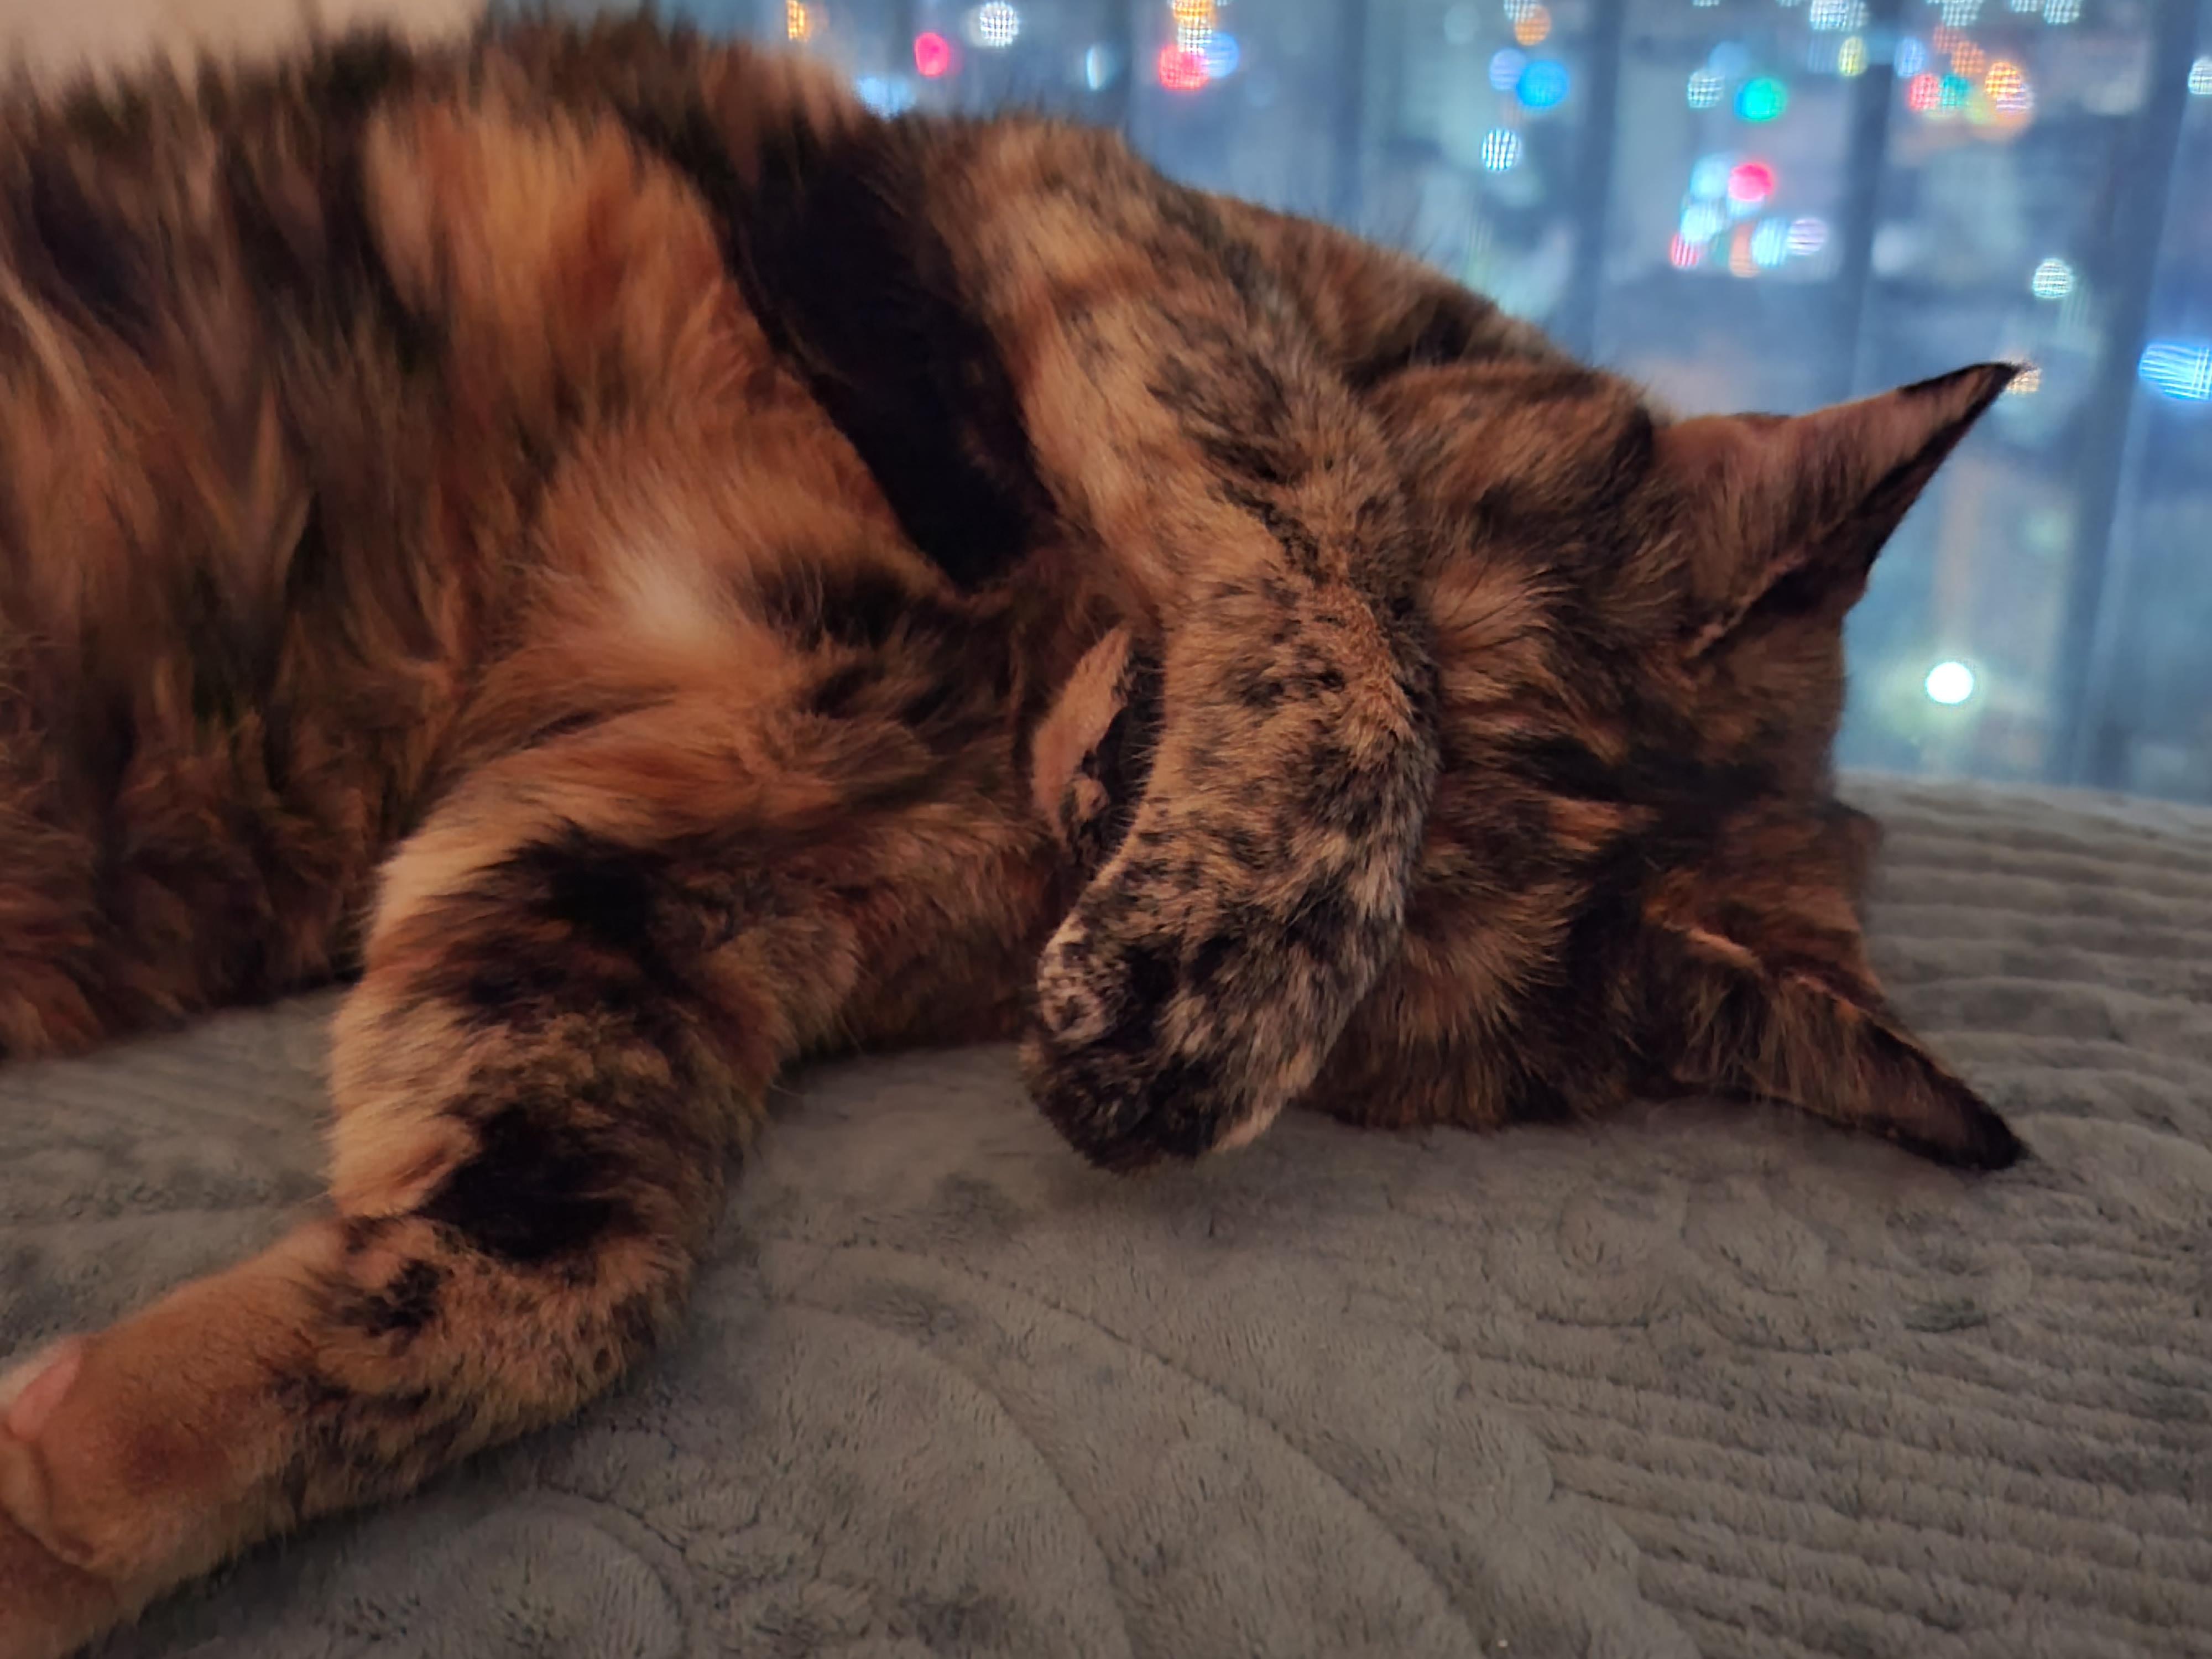 예술적감각이 뛰어난 고양이 올블랙 건이와 코트 무늬가 뛰어난 고양이 카오스 사랑이.